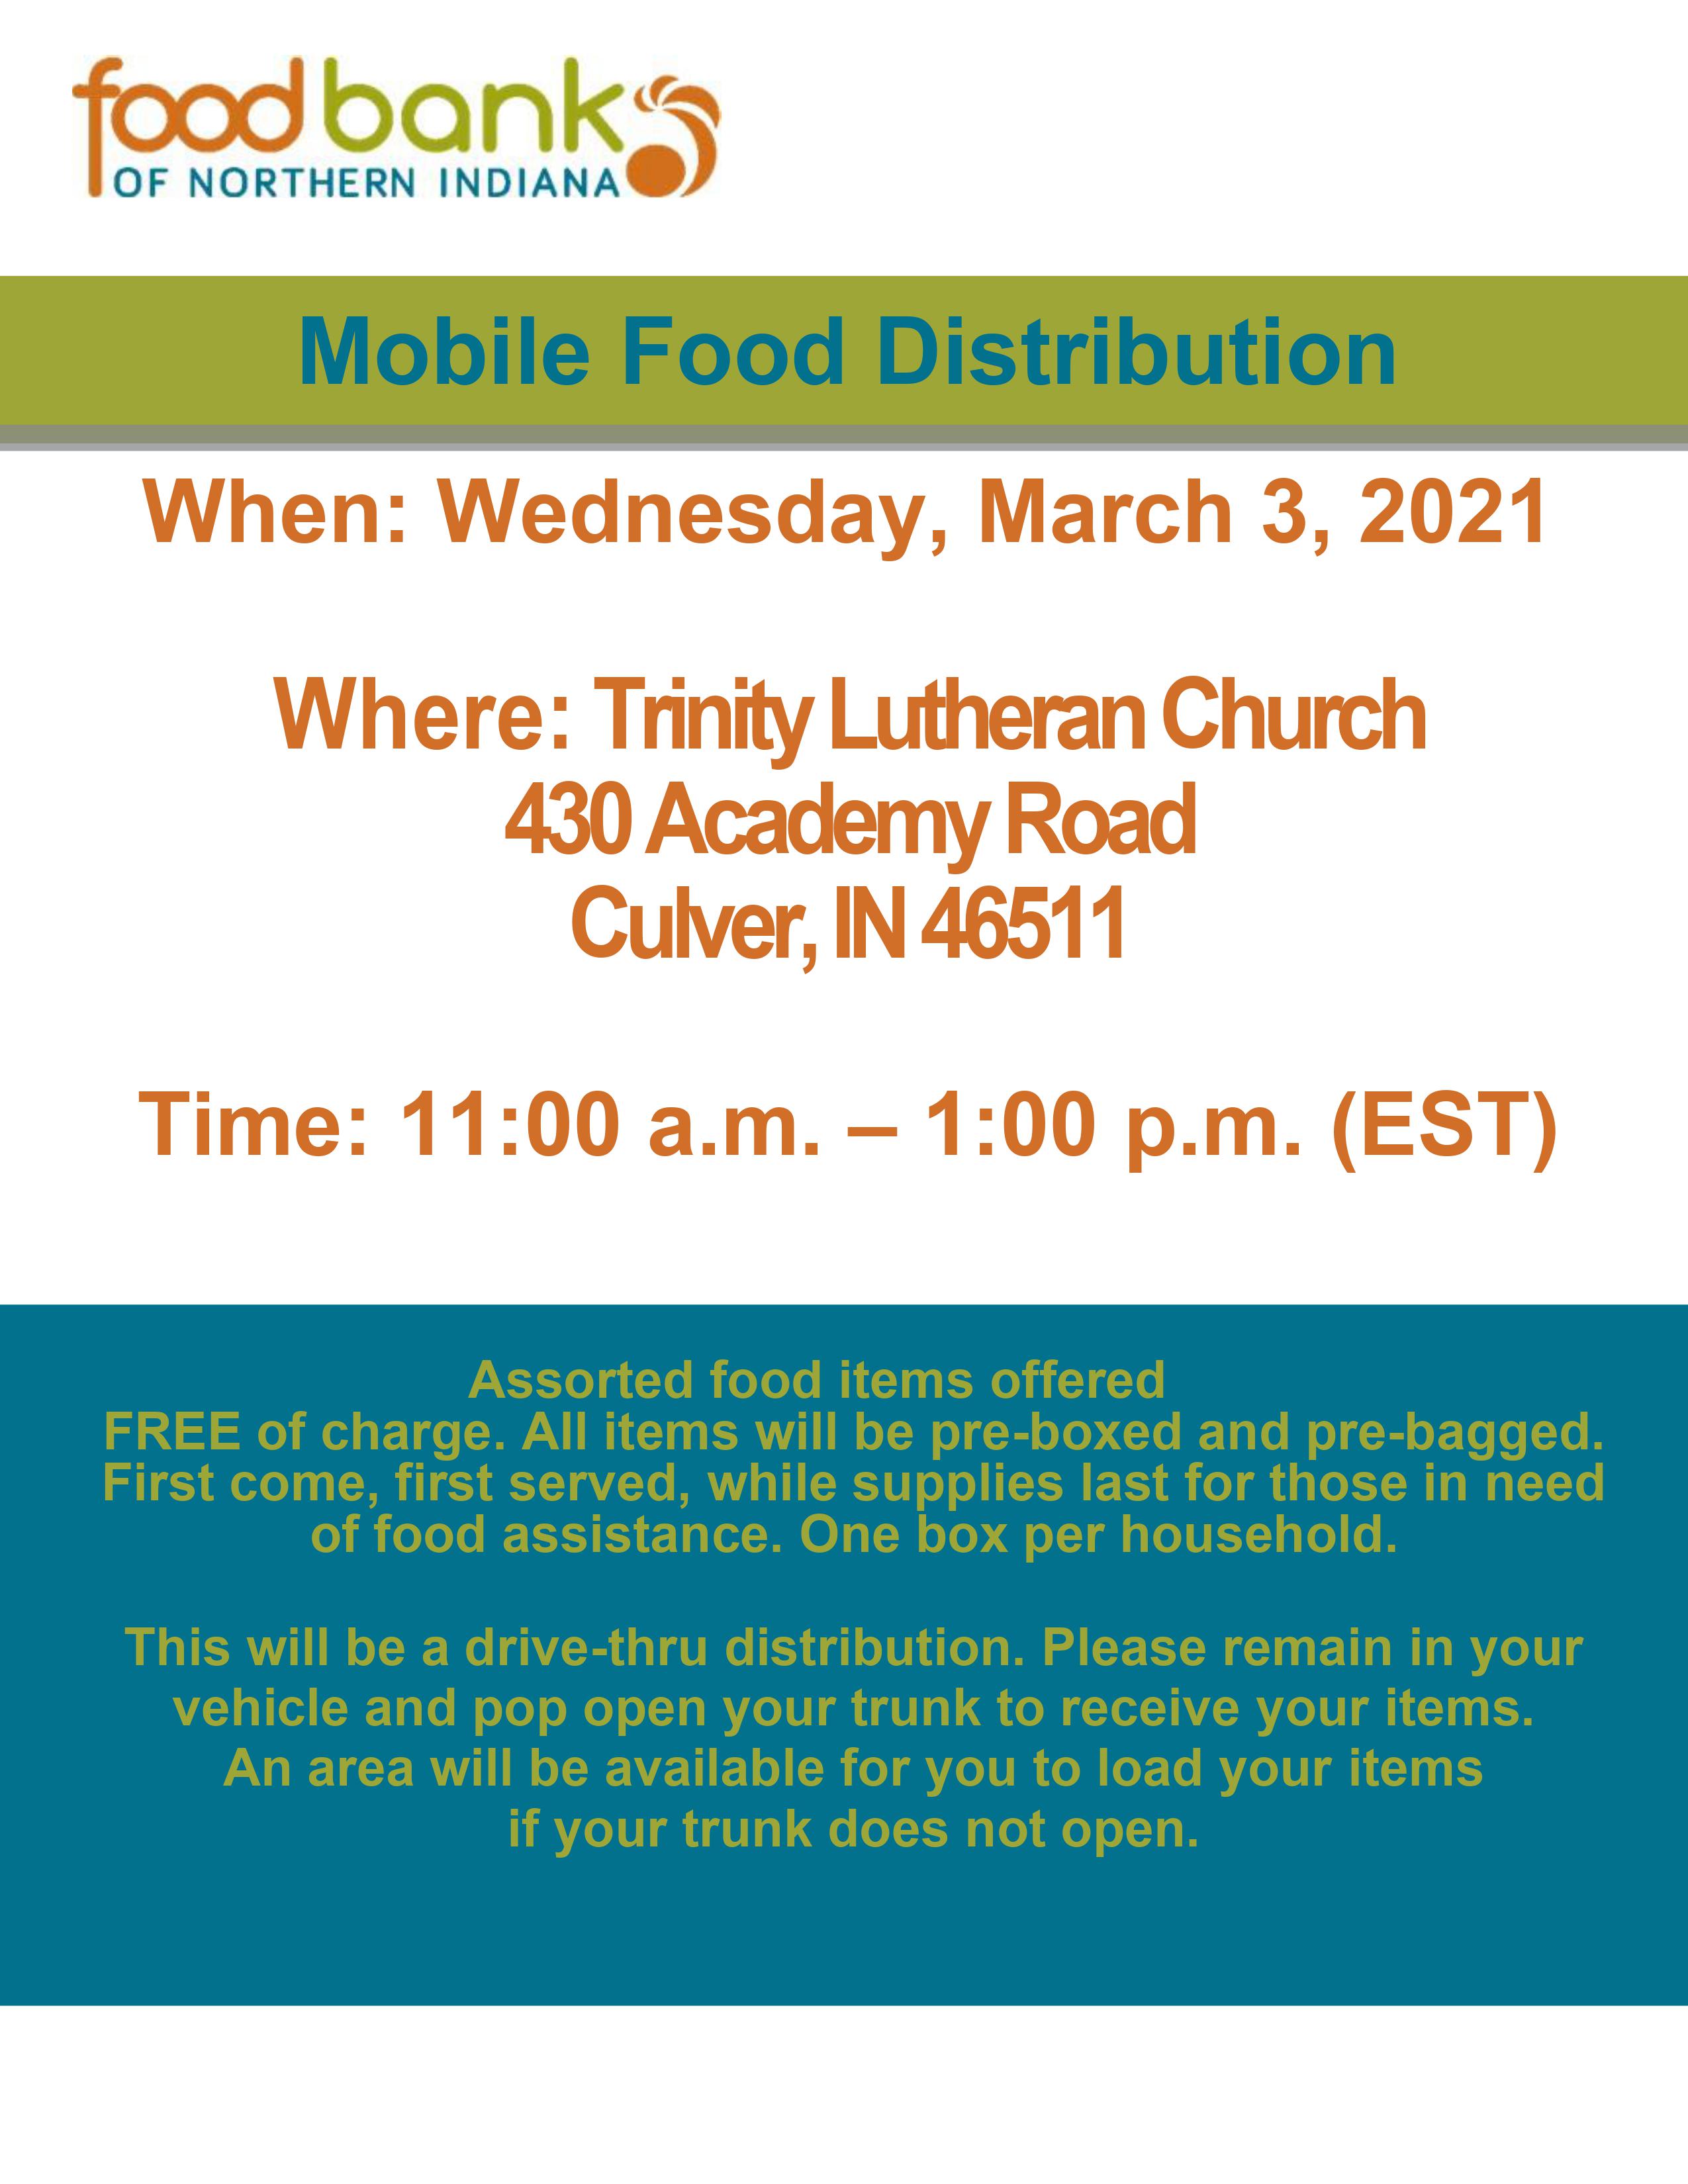 Mobile Food Distribution 3.3